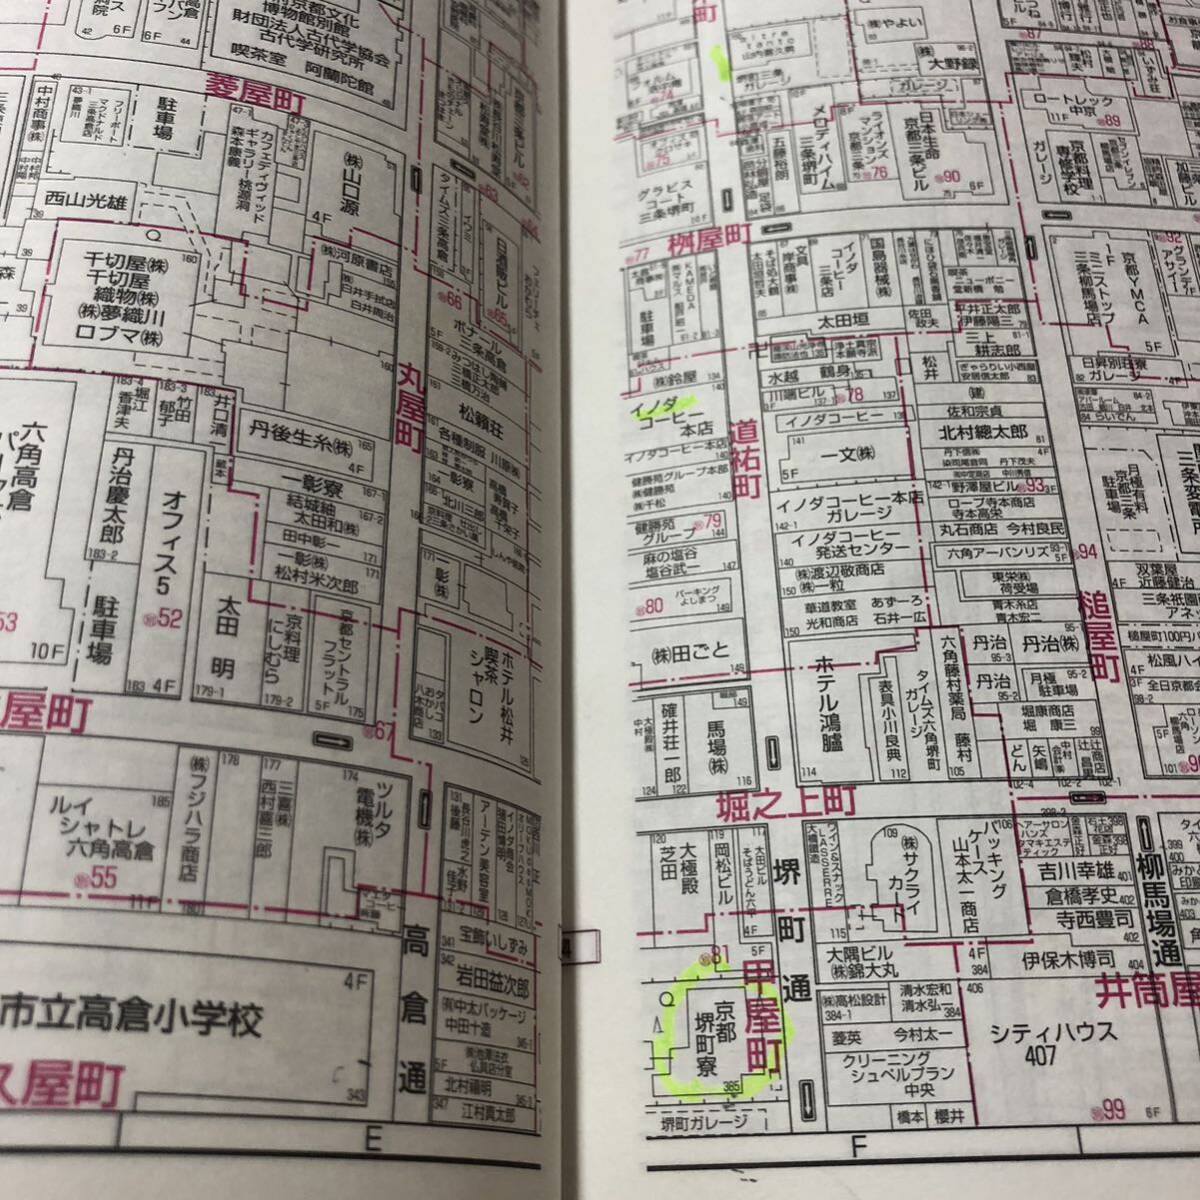 ゼンリン住宅地図 京都市「上京区・中京区」 2000年A4コンパクト版 中古品の画像9